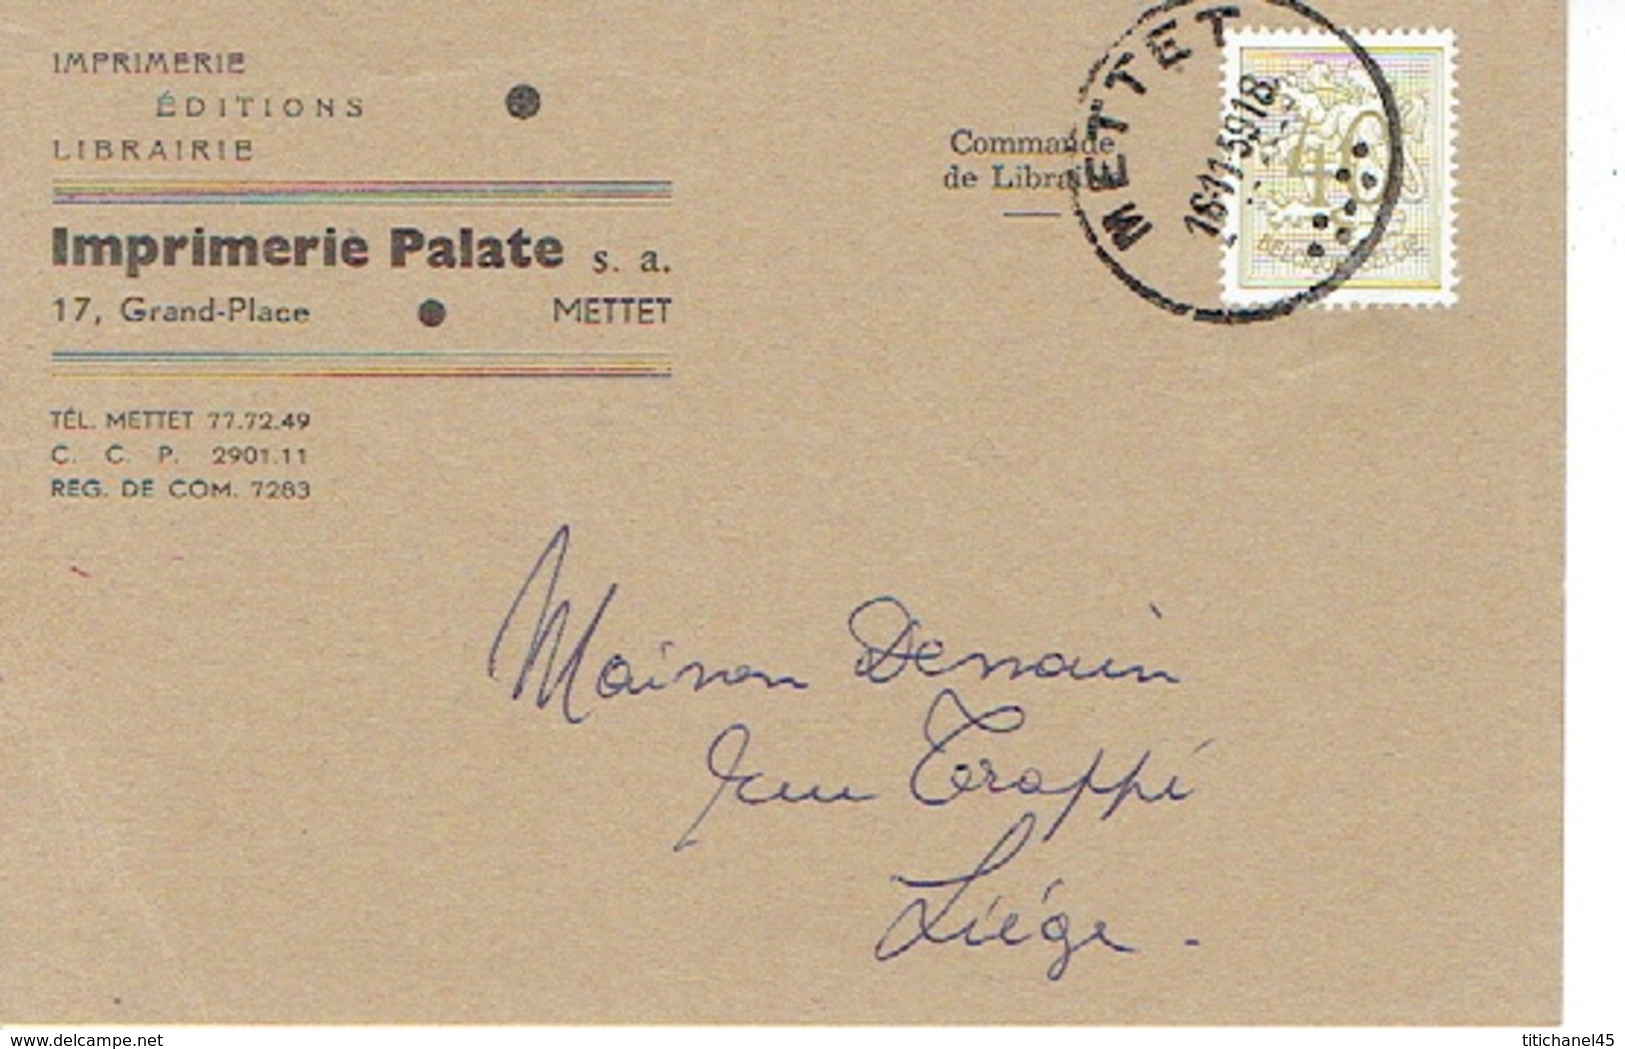 CP Publicitaire - METTET 1959 - IMPRIMERIE PALATE - Imprimerie - Librairie - Editions - Mettet